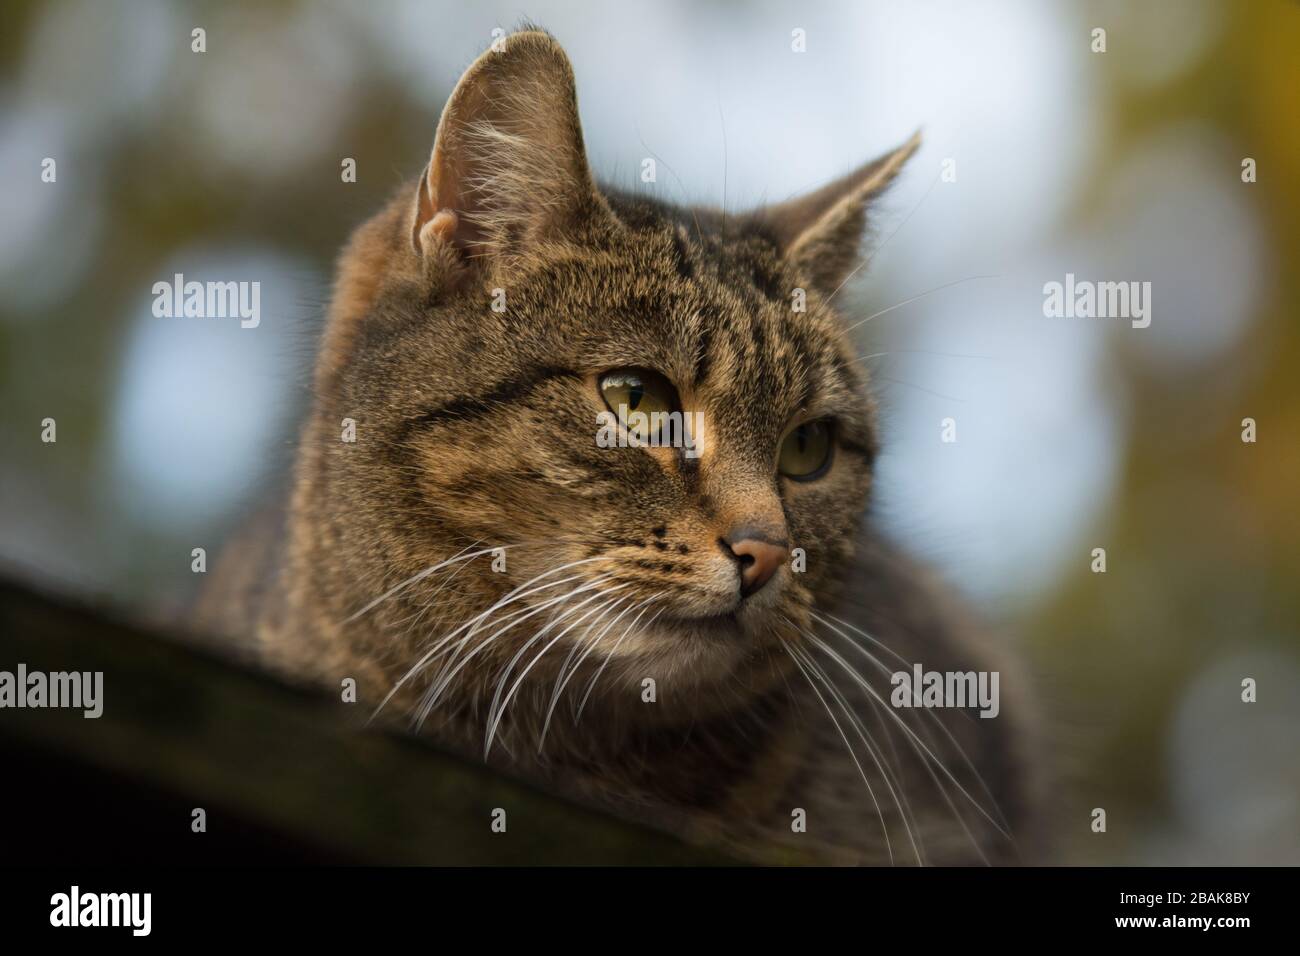 Nahaufnahme einer besprühten Tabby-Katze mit einer Einschnittnarbe auf dem Ohr, die nach rechts blickt Stockfoto